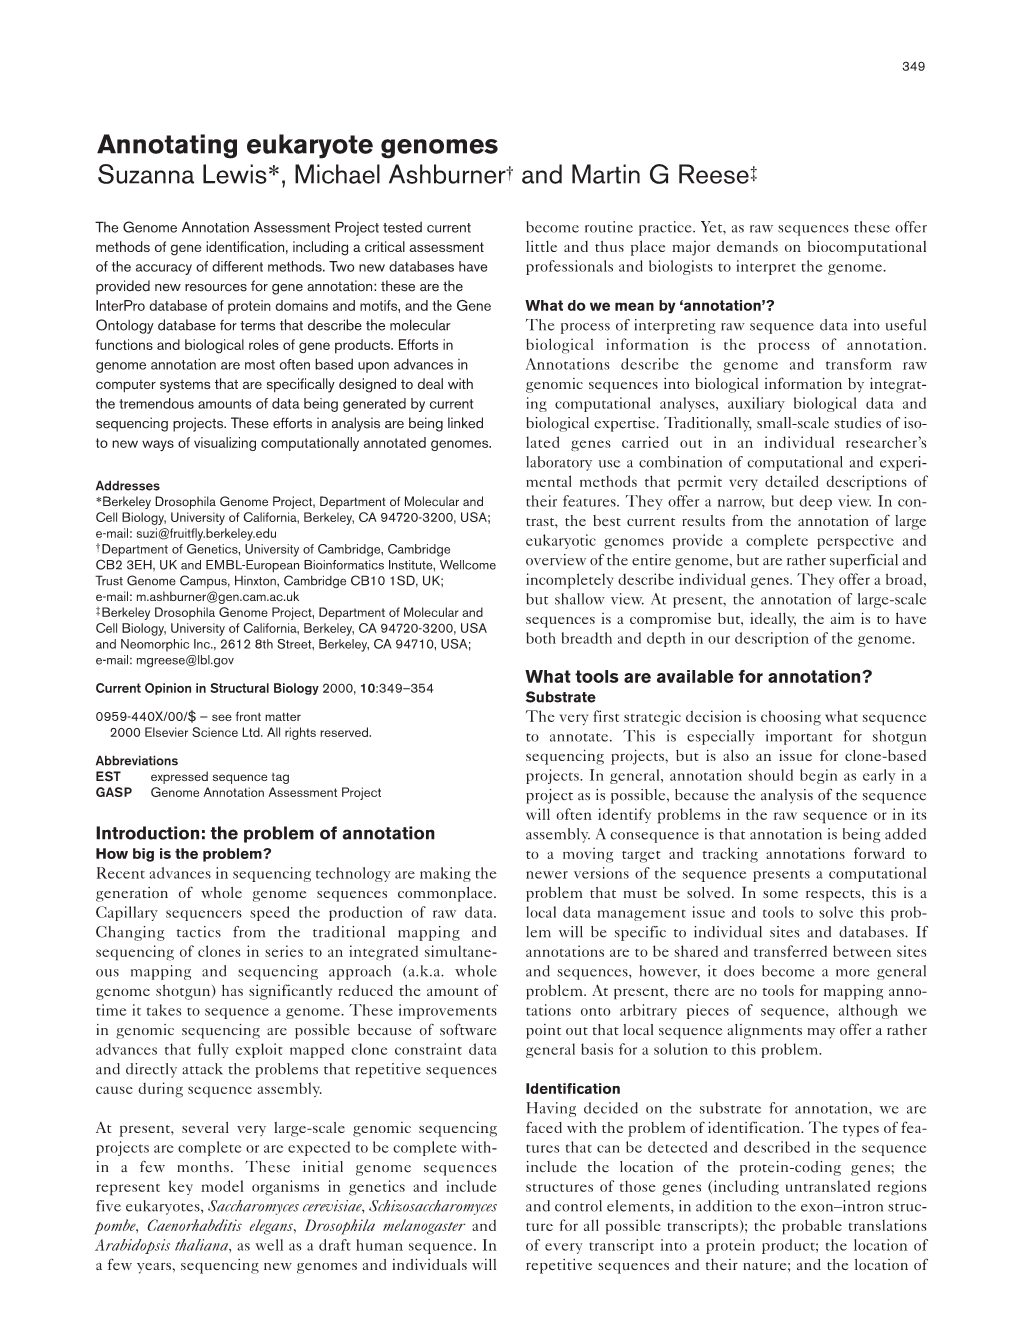 Annotating Eukaryote Genomes Suzanna Lewis*, Michael Ashburner† and Martin G Reese‡